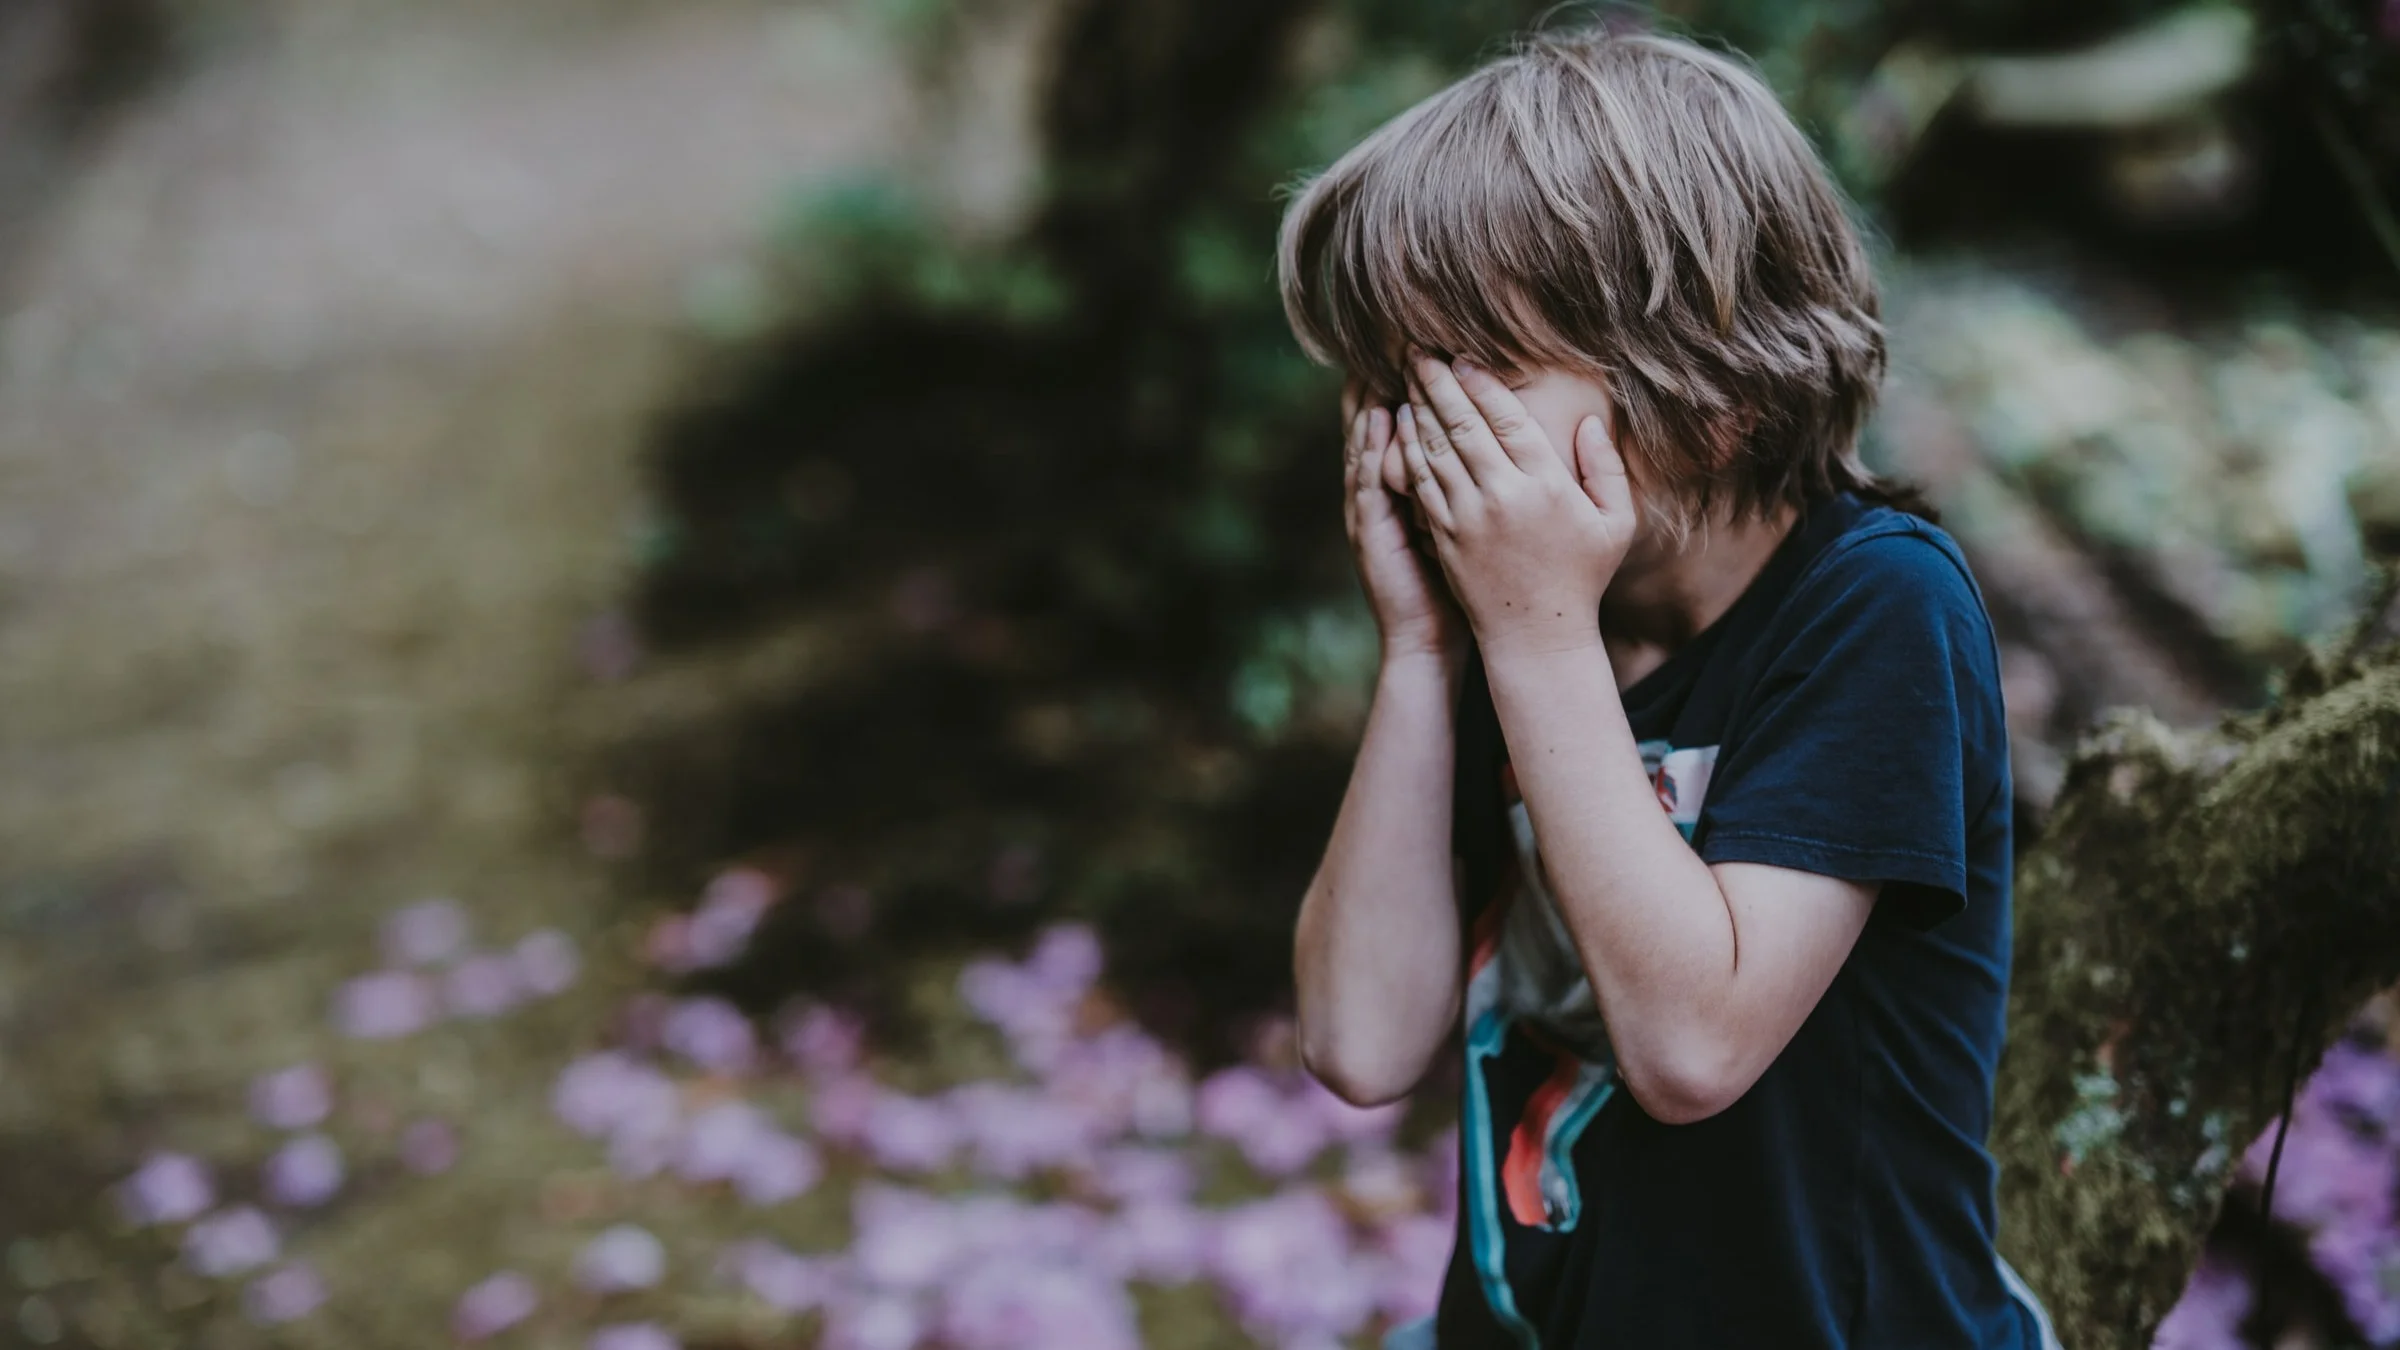 crises de agressividade no autismo: criança segura o rosto com as mãos